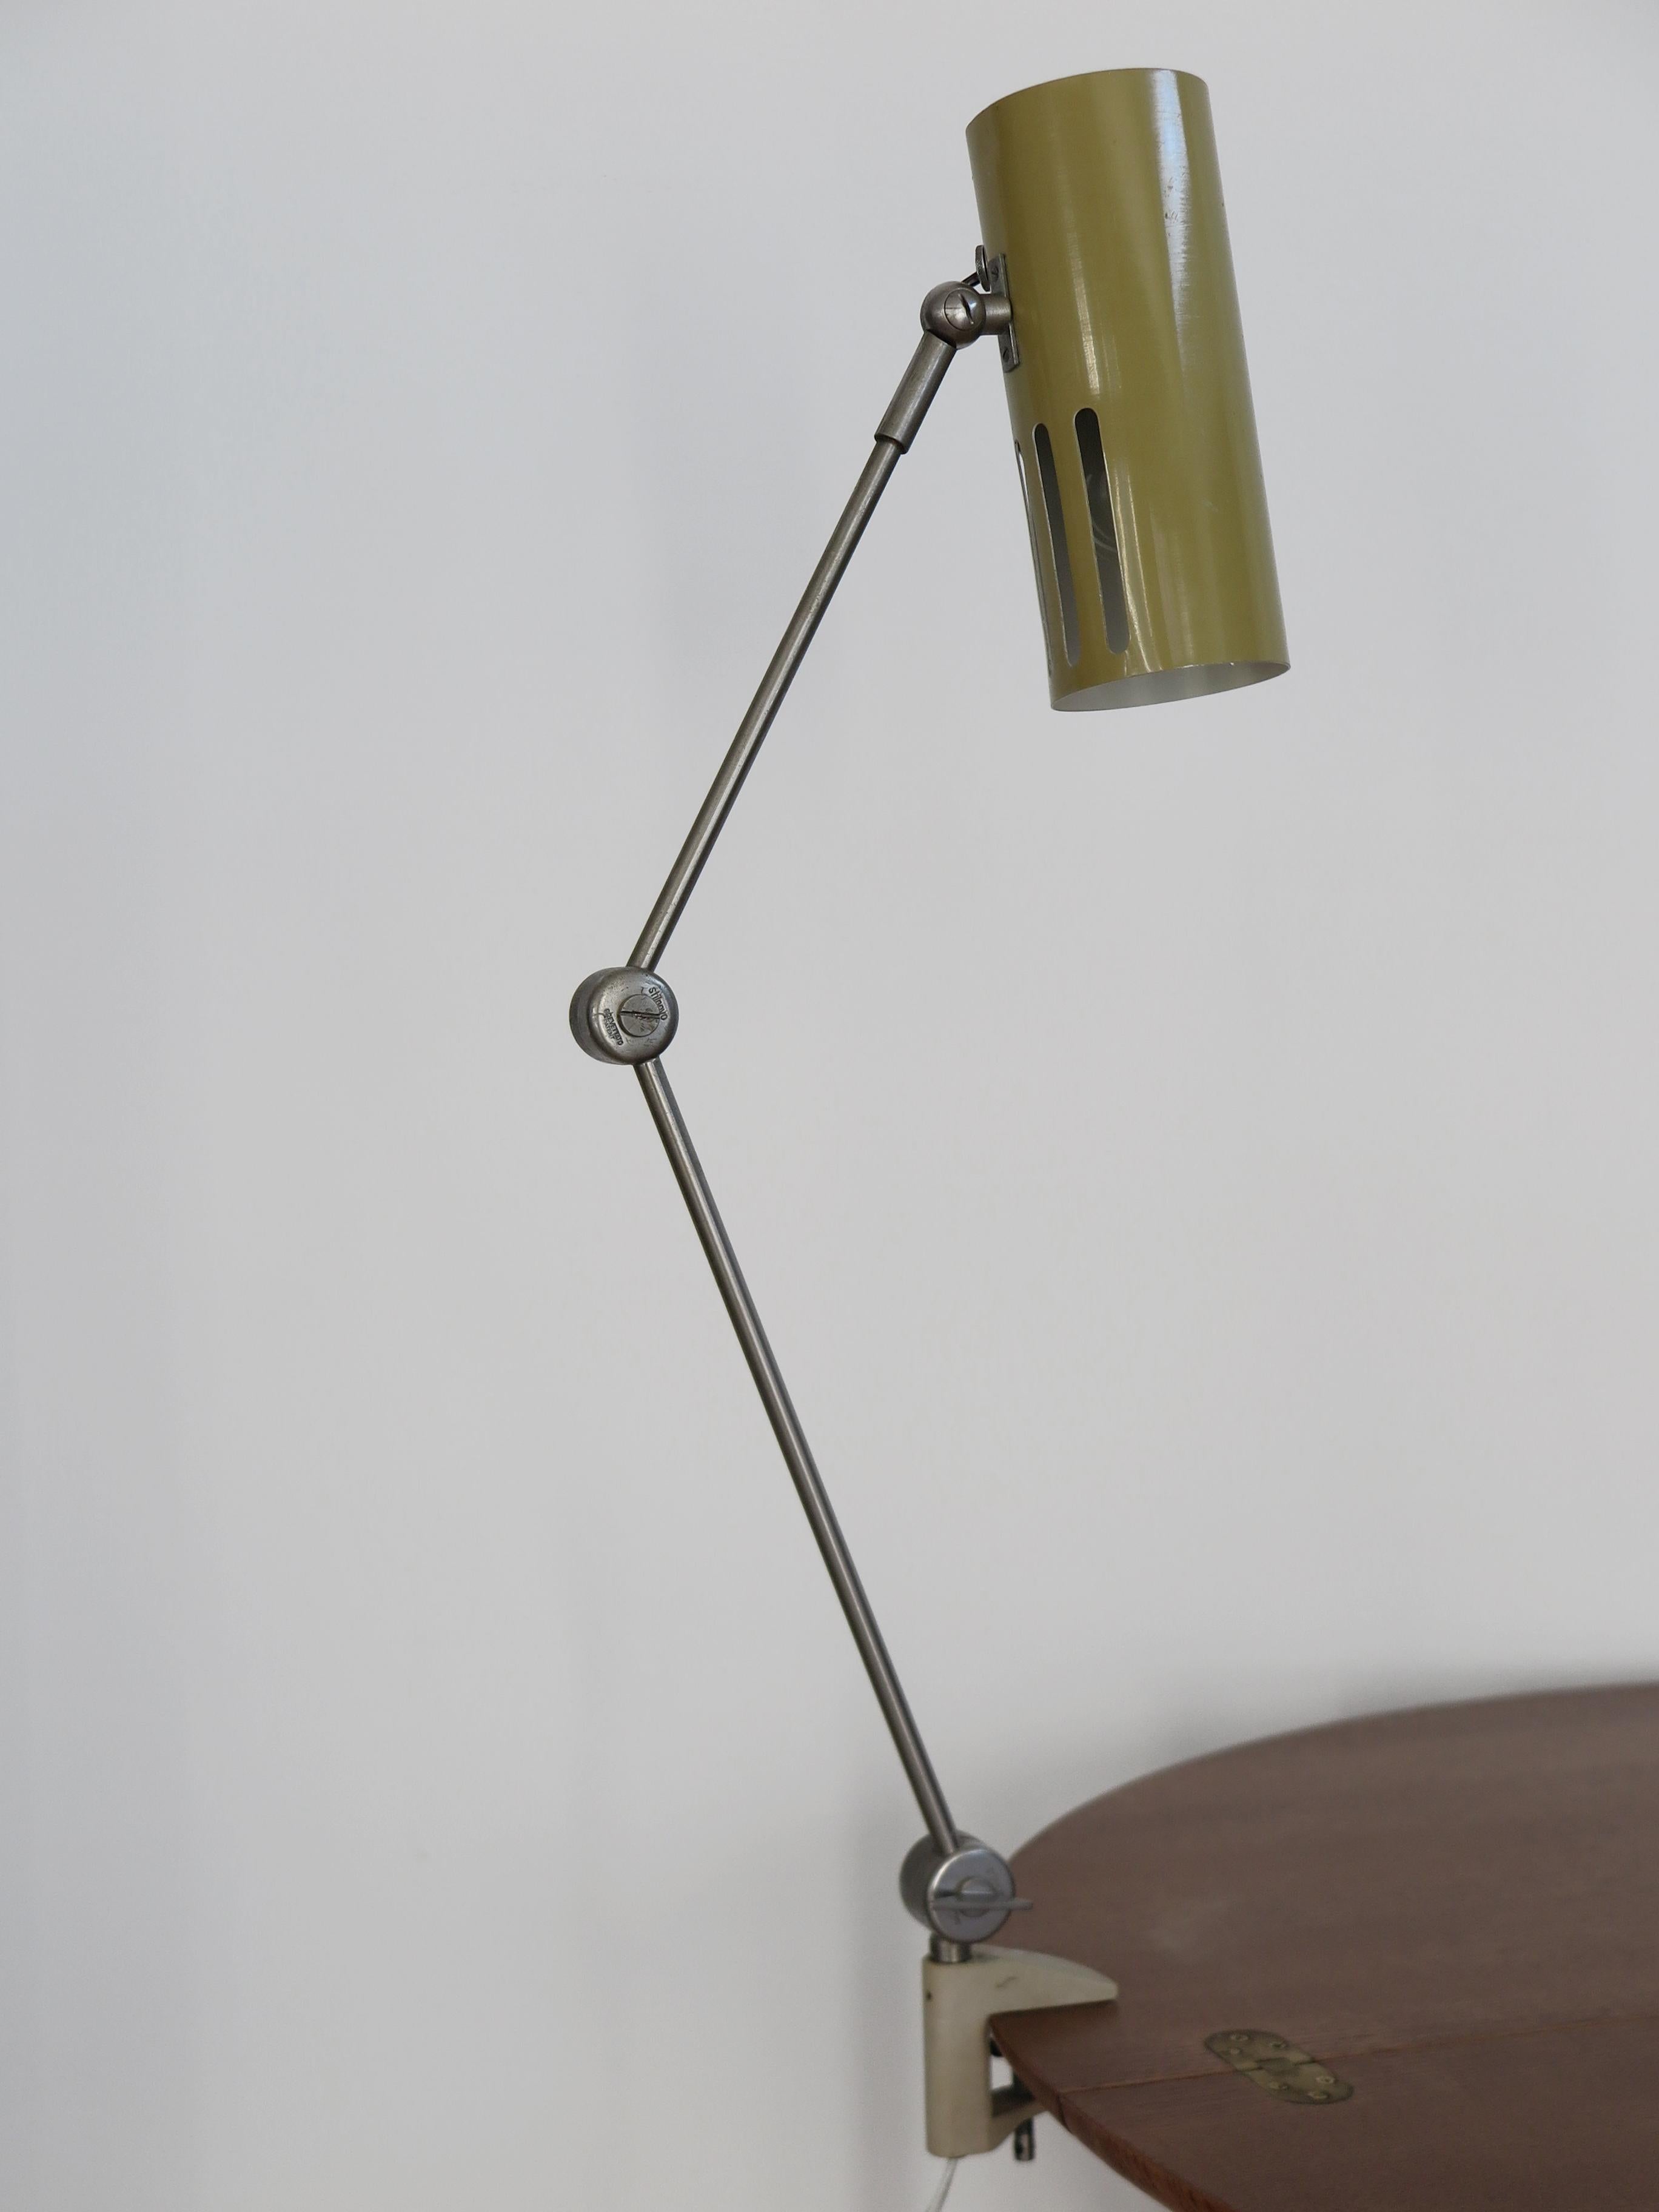 Italian Stilnovo Midcentury Modern Metal Clamp Table Lamp 1950s For Sale 6